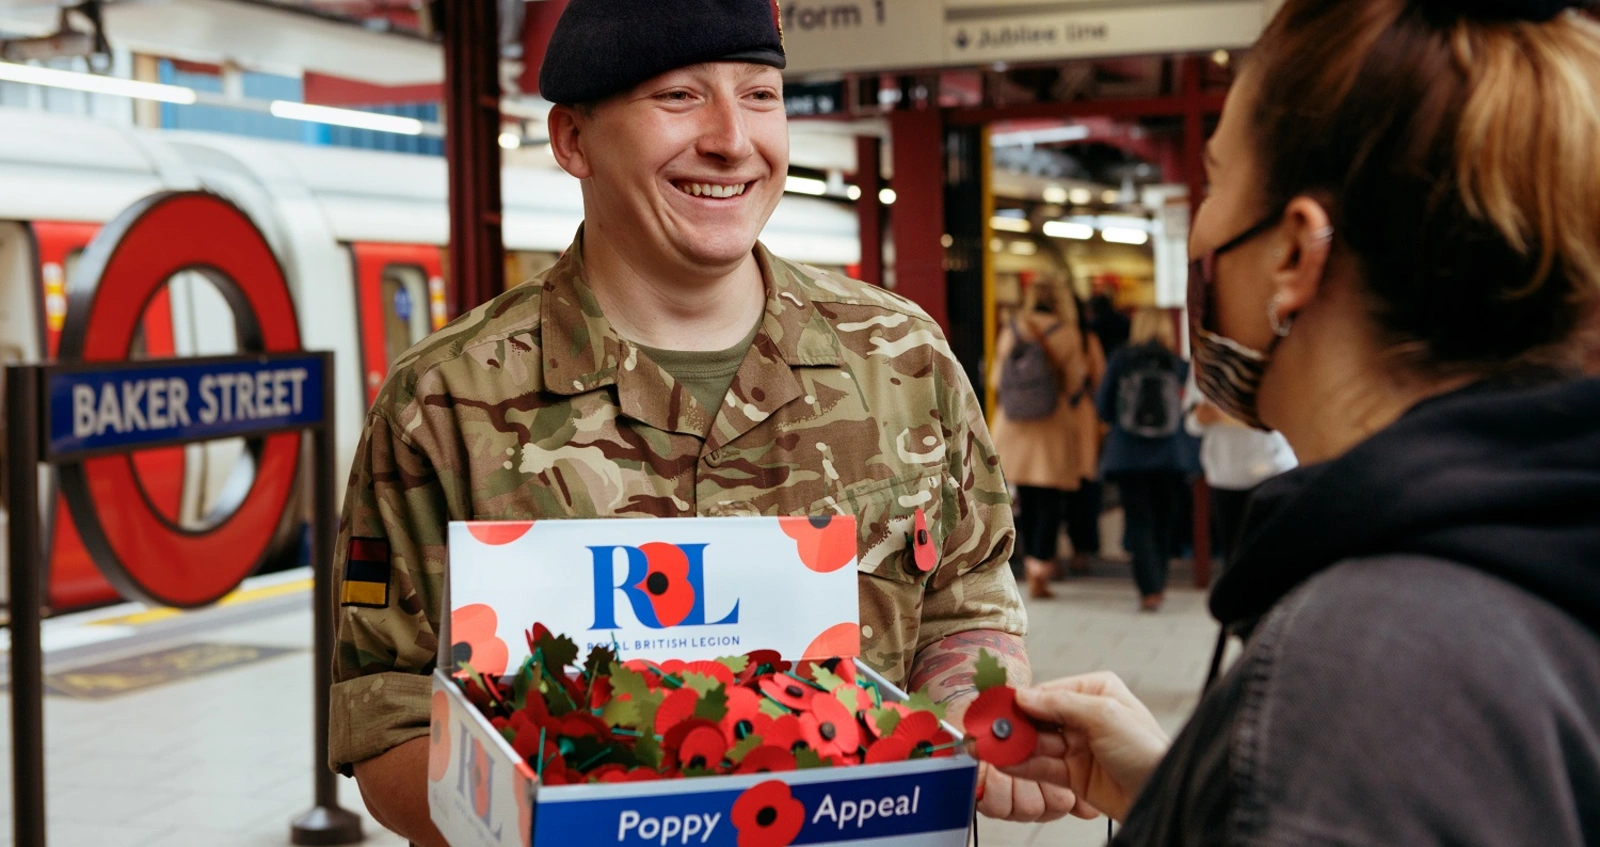 London Poppy Day | Poppy Appel | Royal British Legion